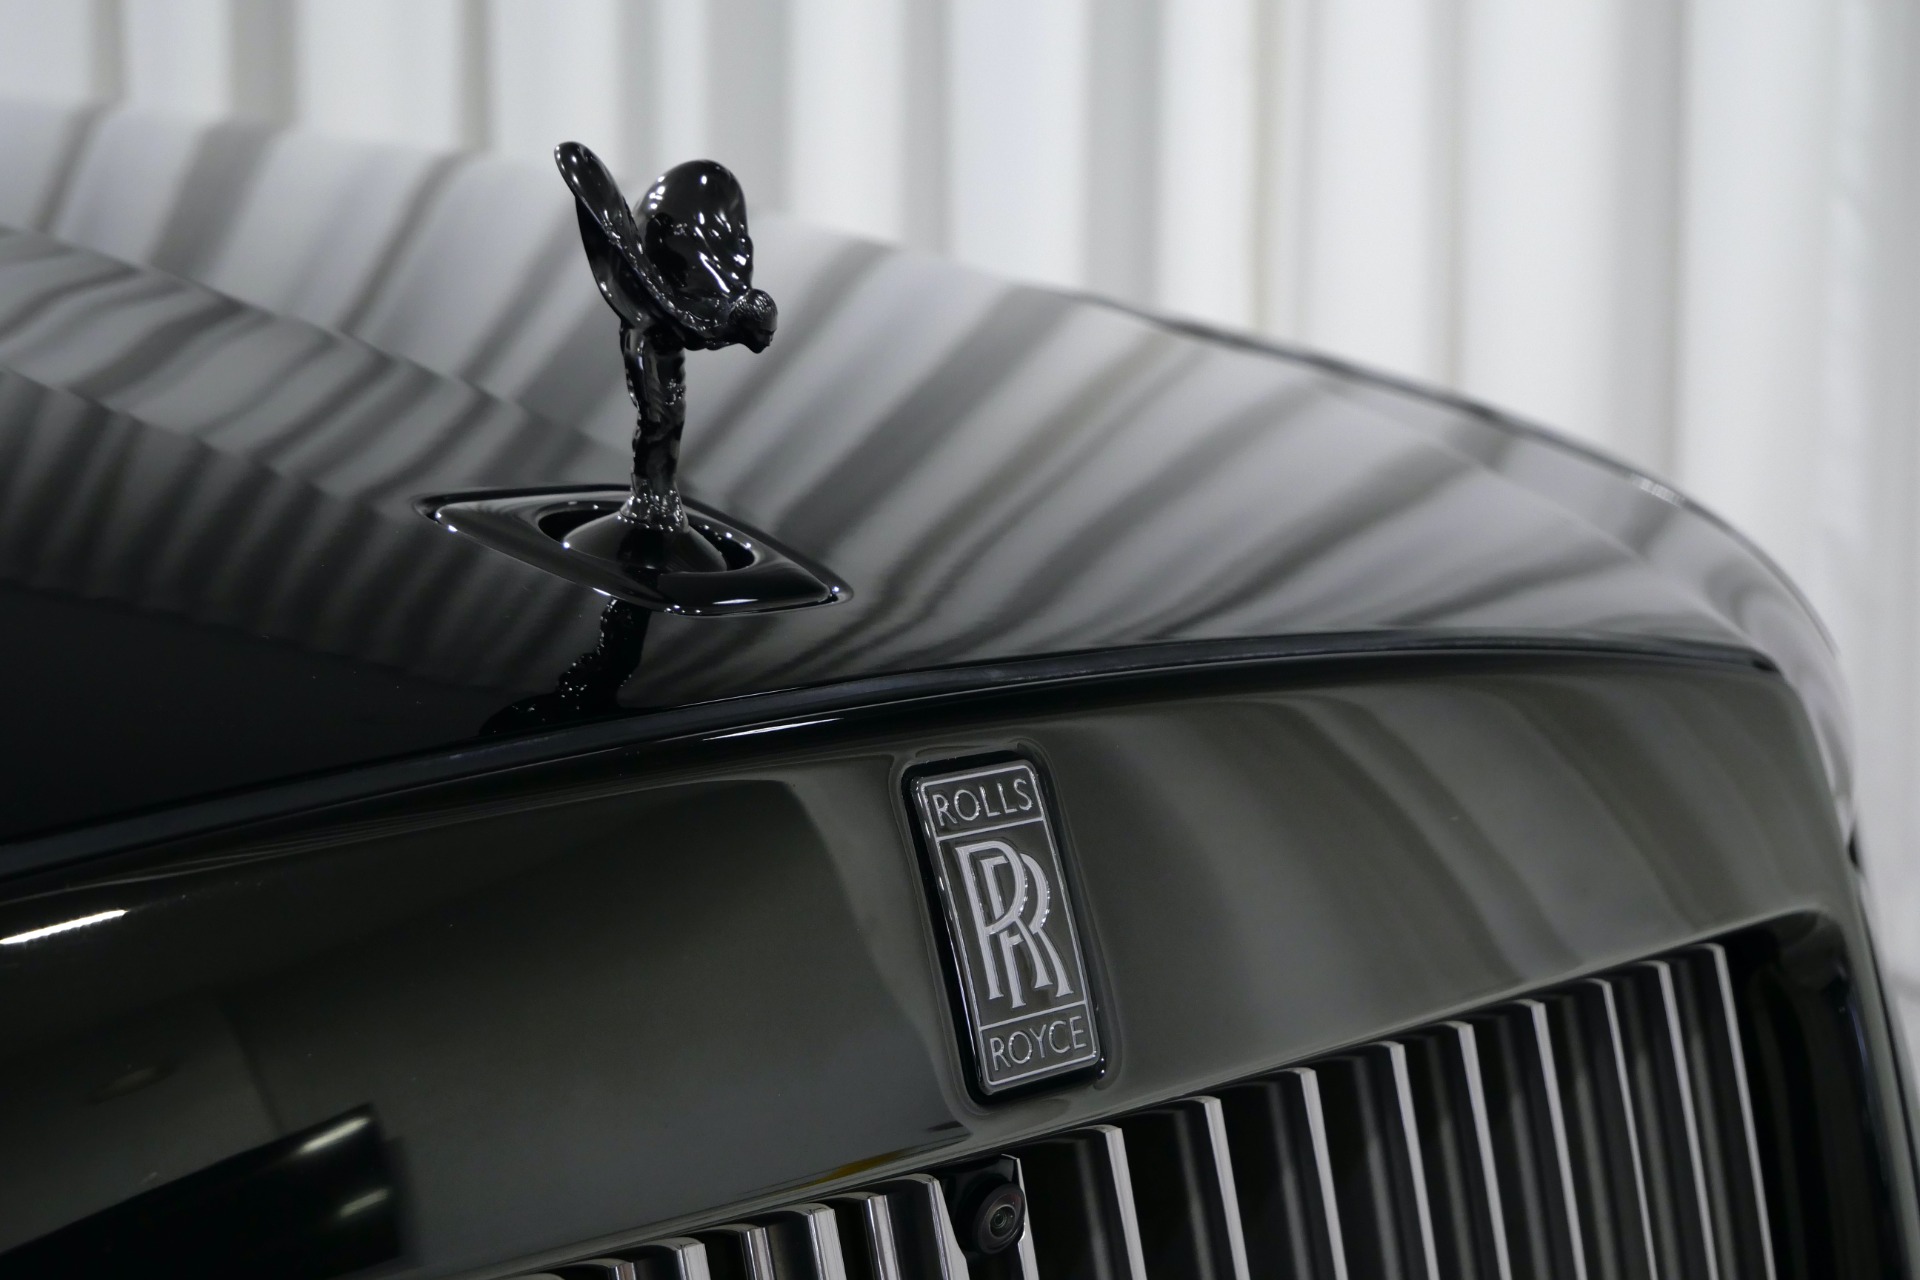 Pre-Owned 2022 Rolls-Royce Ghost Black Badge 4D Sedan in Mt. Laurel  #NU214002